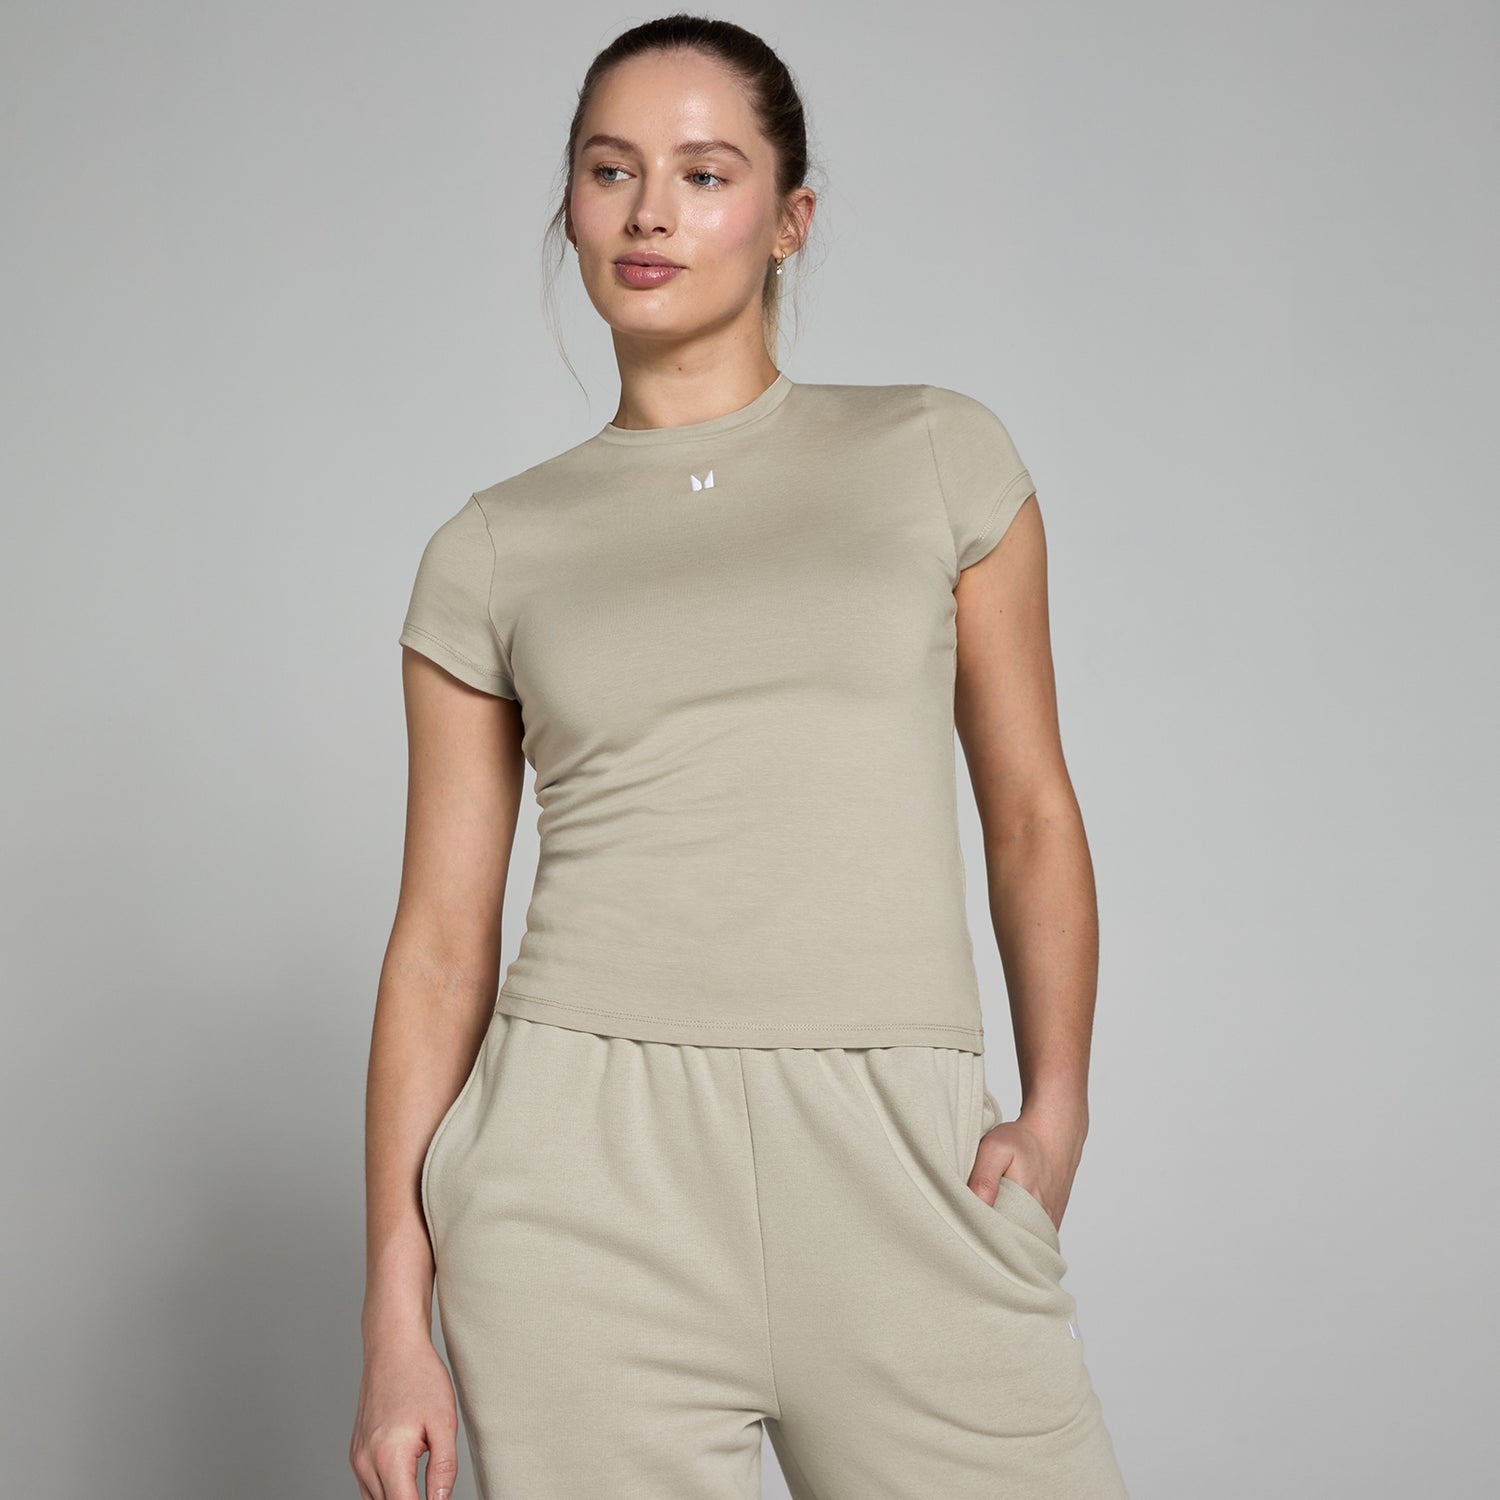 Женская облегающая футболка с короткими рукавами MP Basic — серый цвет - M